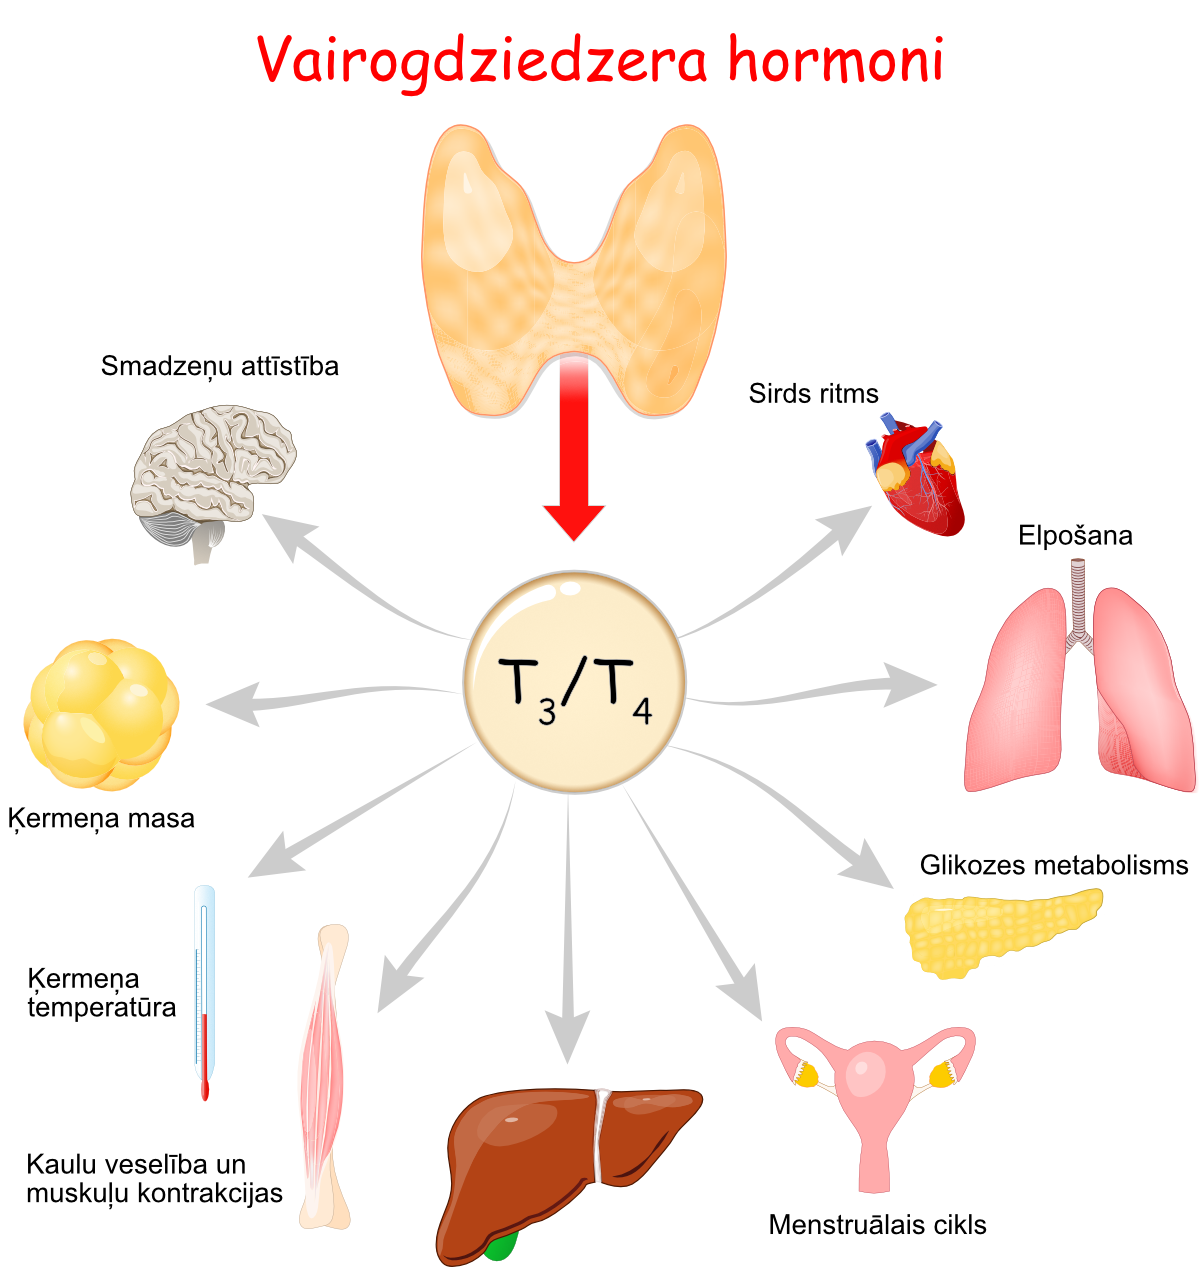 Zīmējums, kur attēlota vairogdziedzera hormonu T3 un T4 ietekme uz dažādiem cilvēka orgāniem, piemēram, sirdi, plaušām, aizkuņģa dziedzeri, olnīcām, aknām, kauliem un muskuļiem, kā arī uz tādām organisma funkcijām kā ķermeņa temperatūras kontrole, ķermeņa masa un smadzeņu attīstība